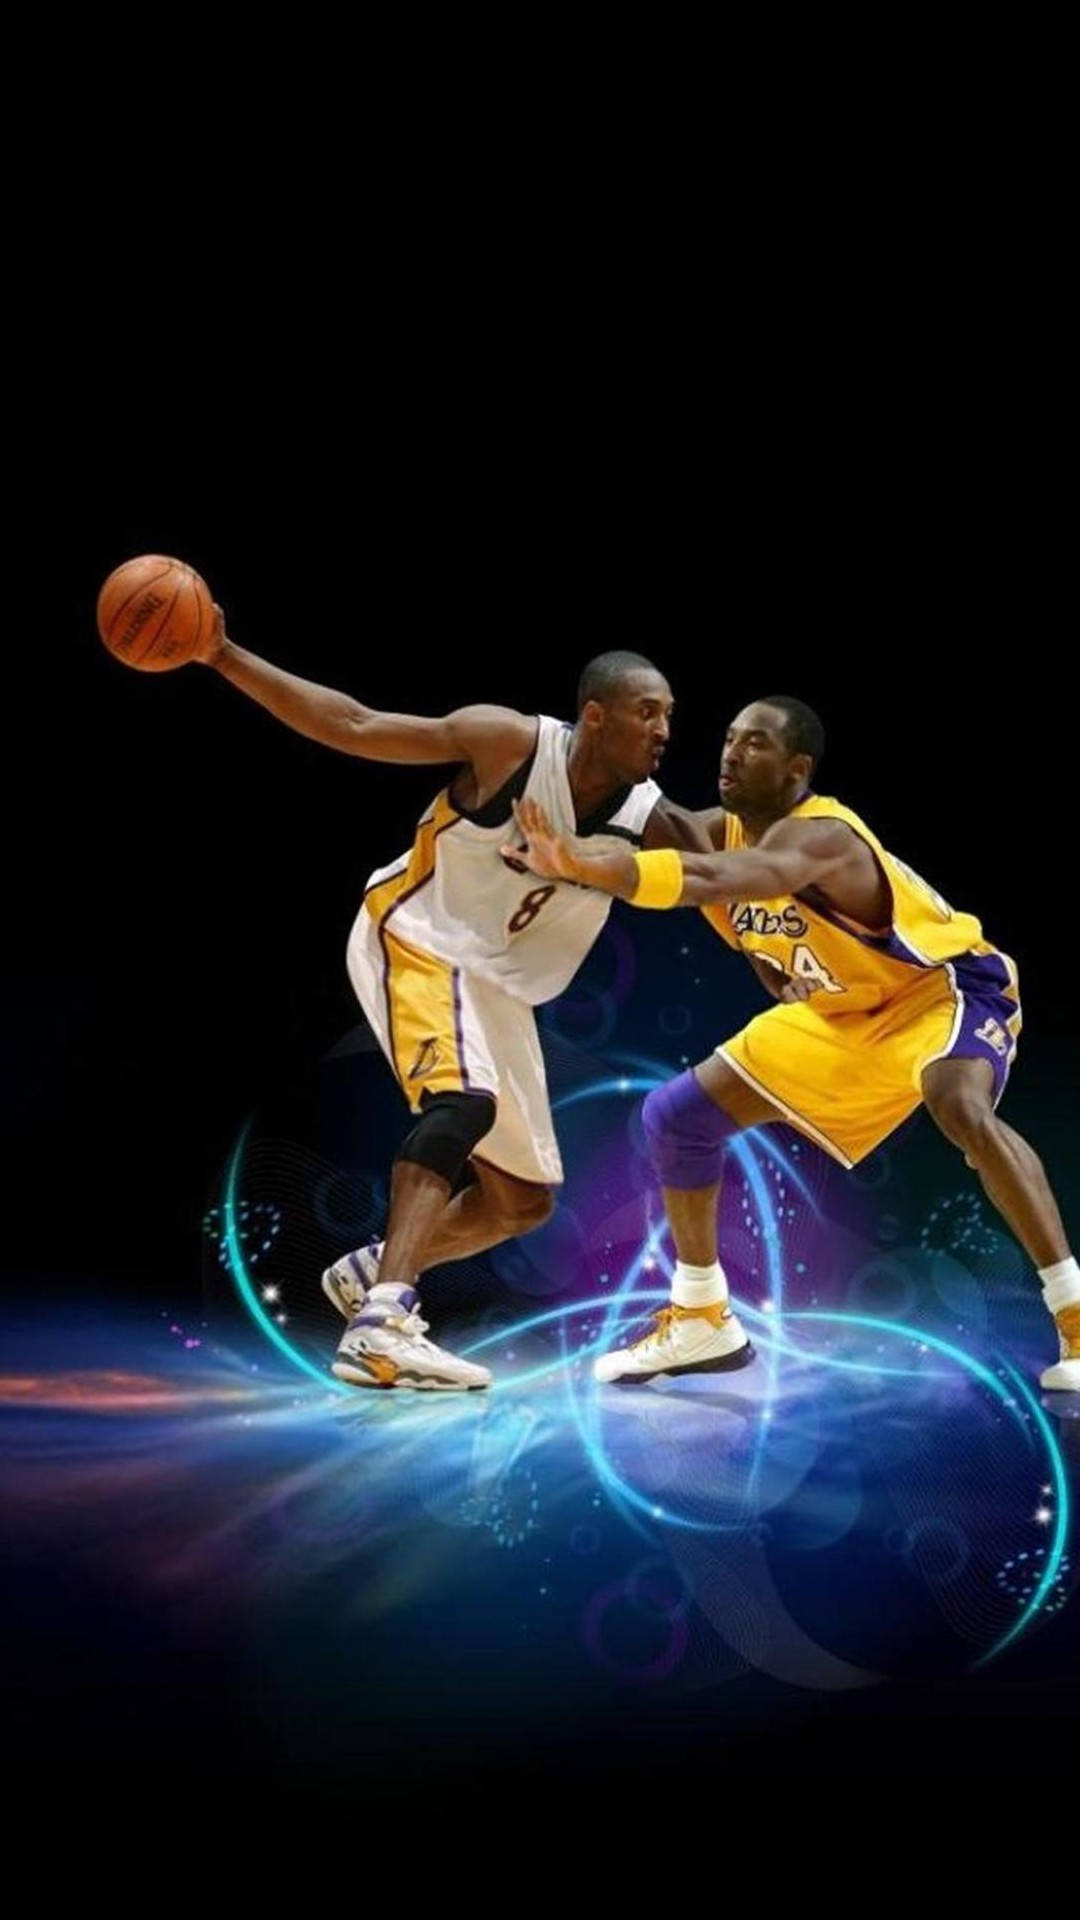 Kobe Vs Kobe Cool Basketball Iphone Background